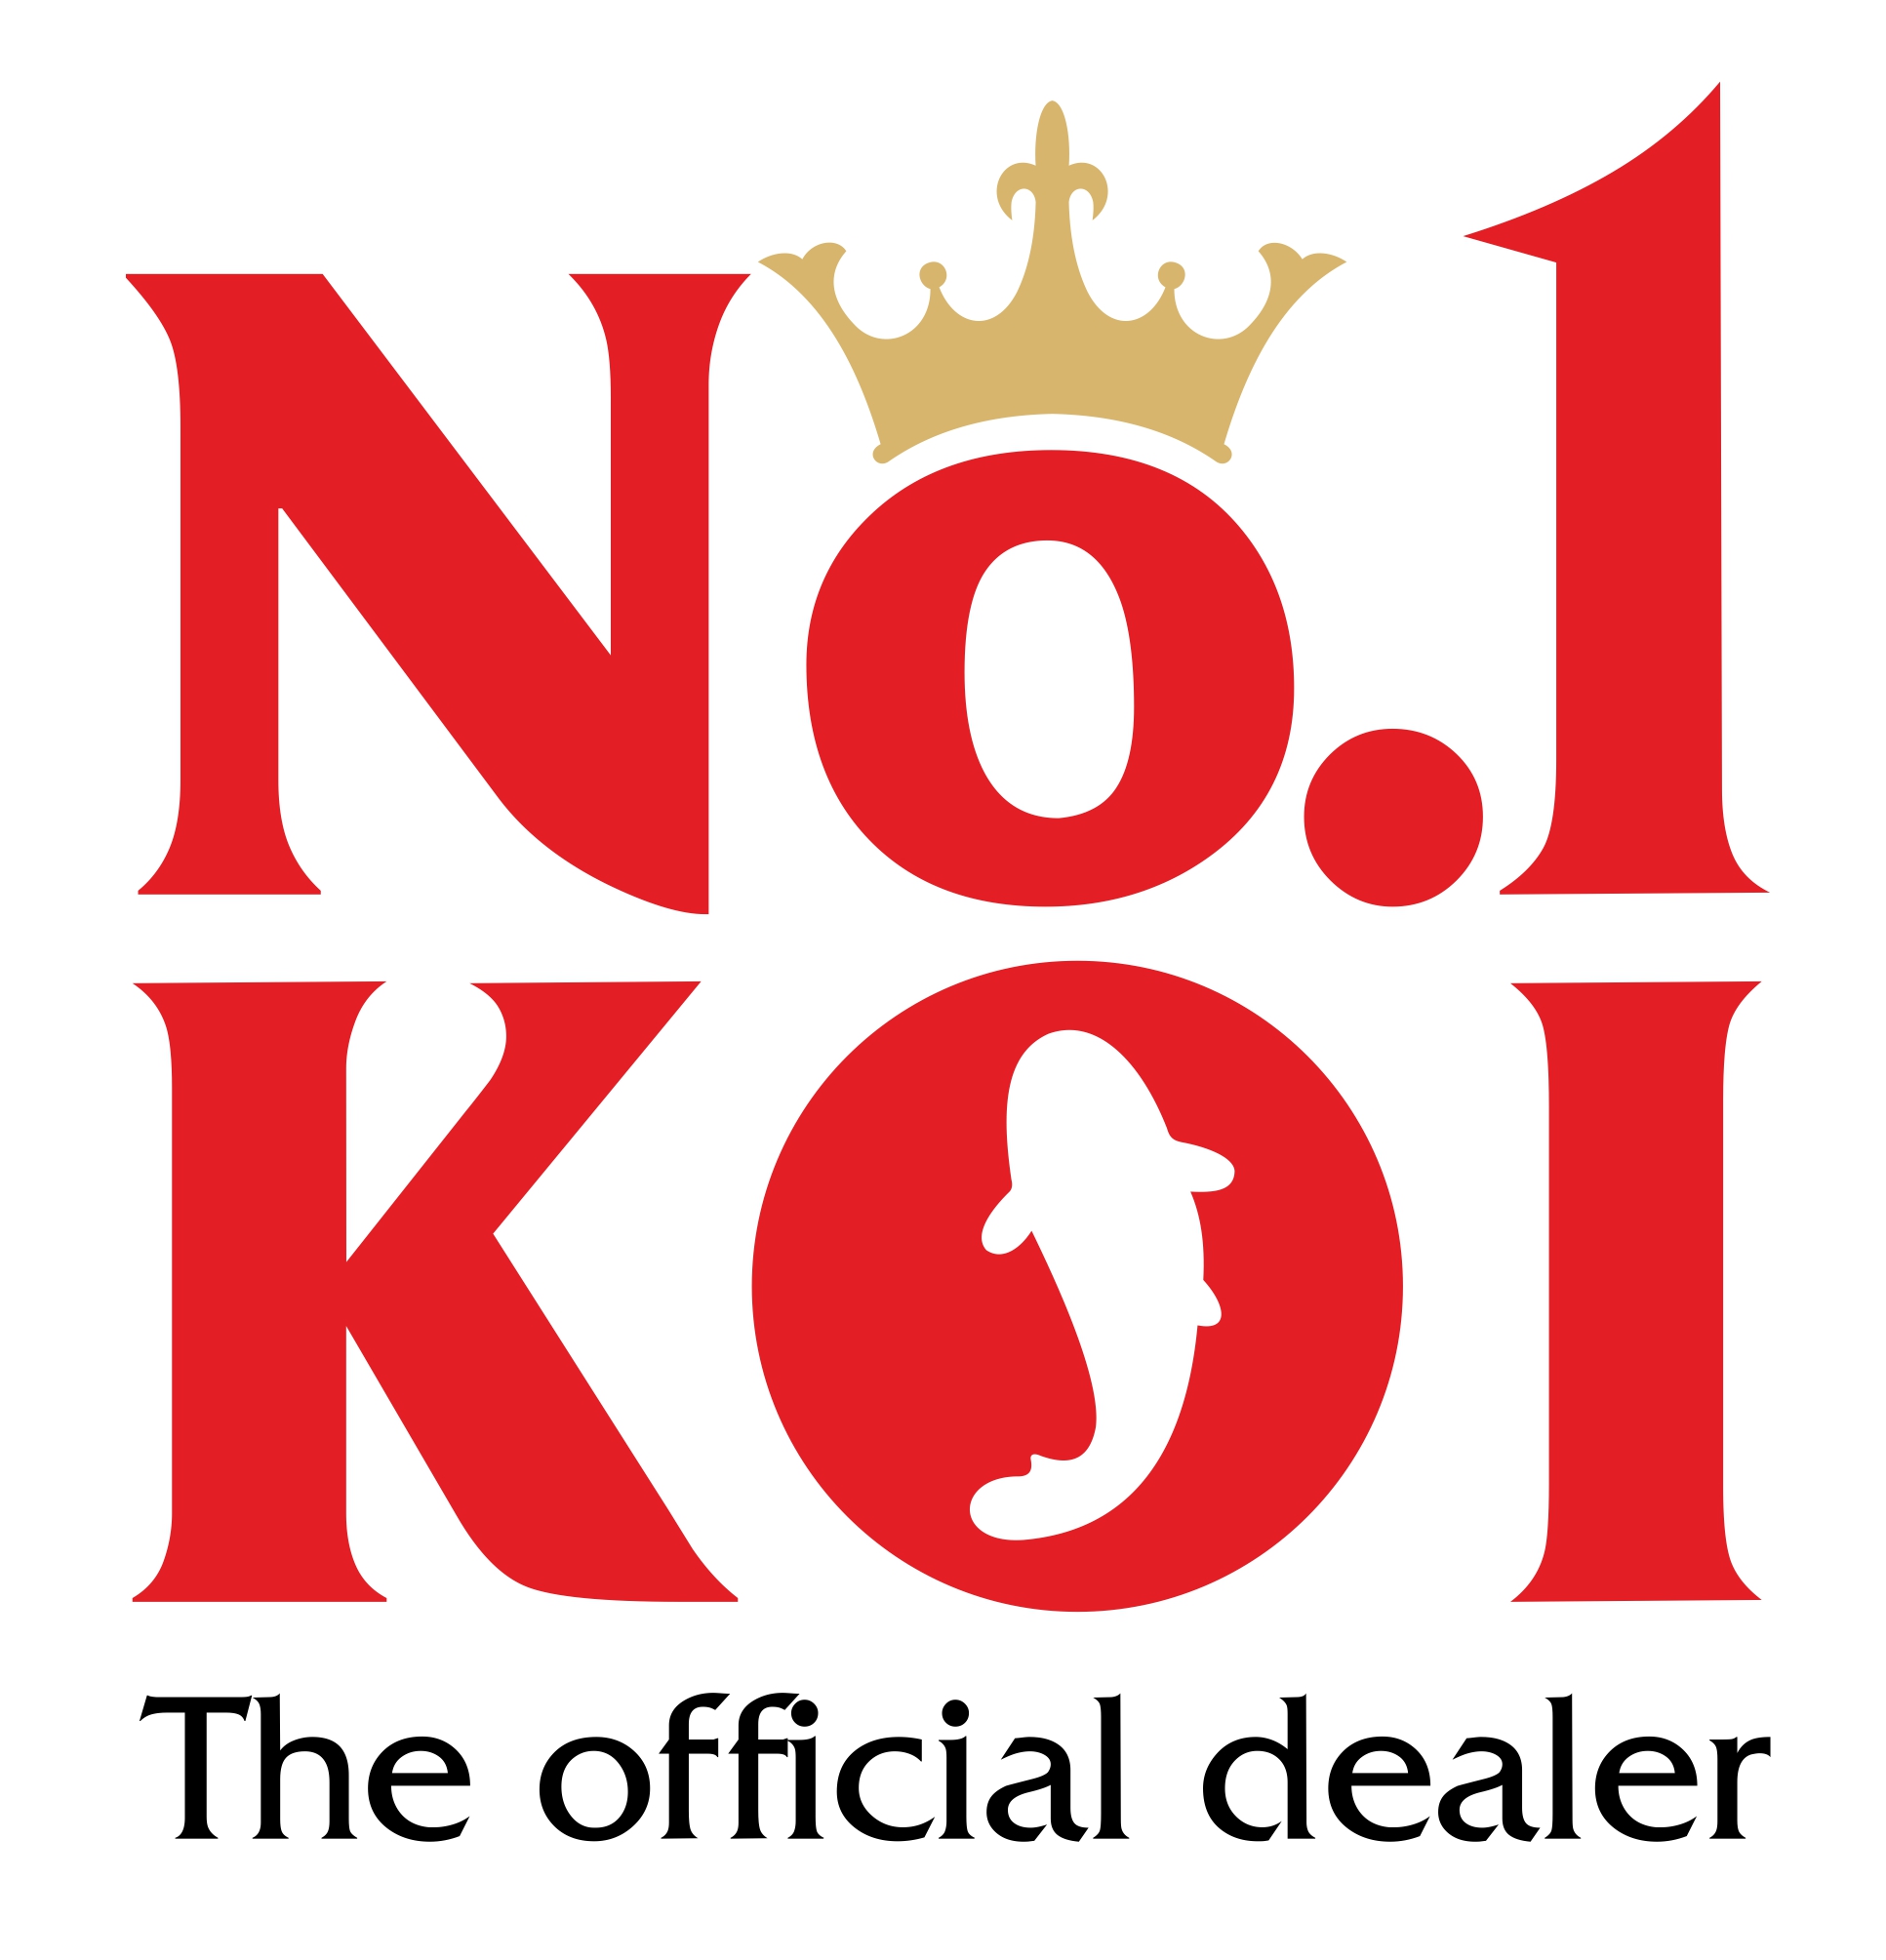 AQUATICA KOI CENTRUM is NO.1 KOI official dealer for Europe ...